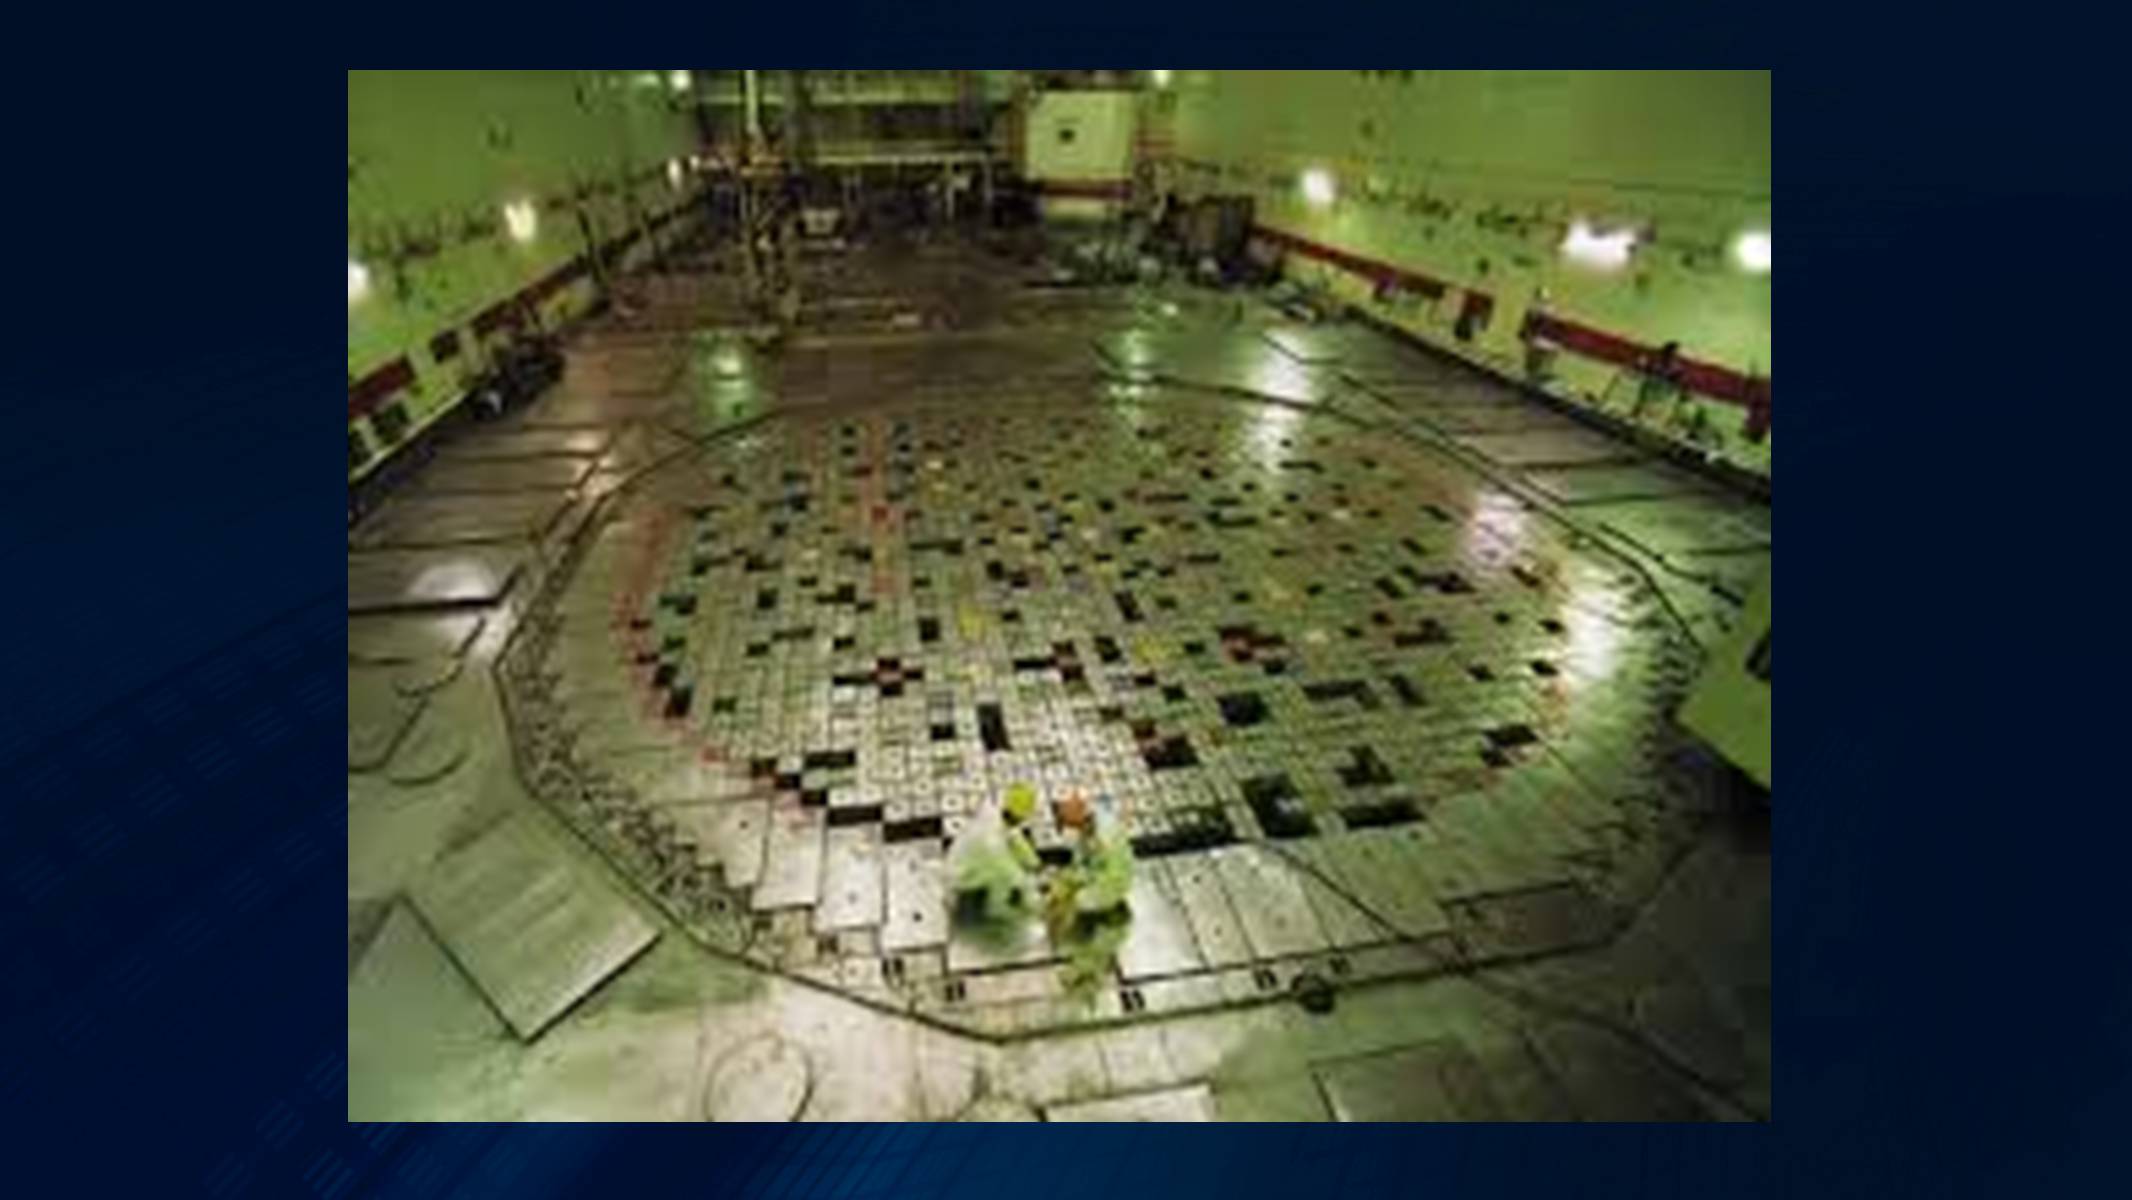 Аэс 3 энергоблок. Реактор РБМК-1000 Чернобыль взрыв. Крышка реактора РБМК 1000 Чернобыля. Крышка реактора 4 энергоблока ЧАЭС. РБМК-1000 Чернобыльская АЭС 3 энергоблок.